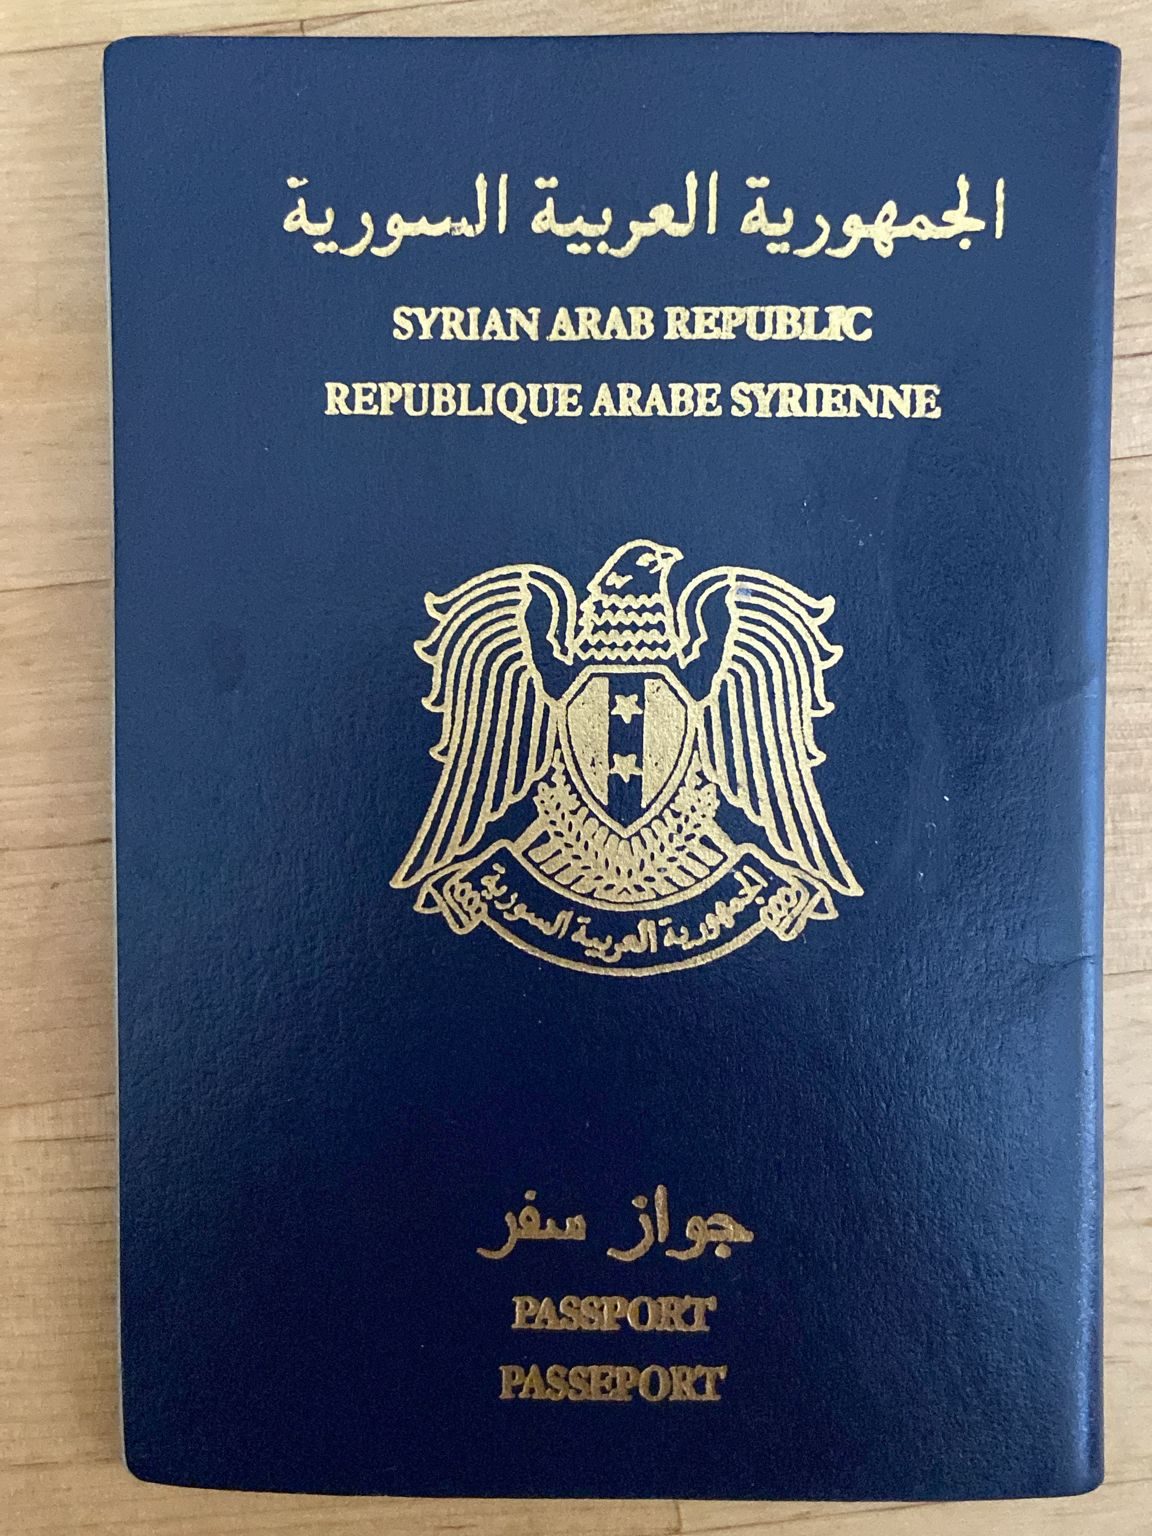 world's weakest passport 
Syrian passport